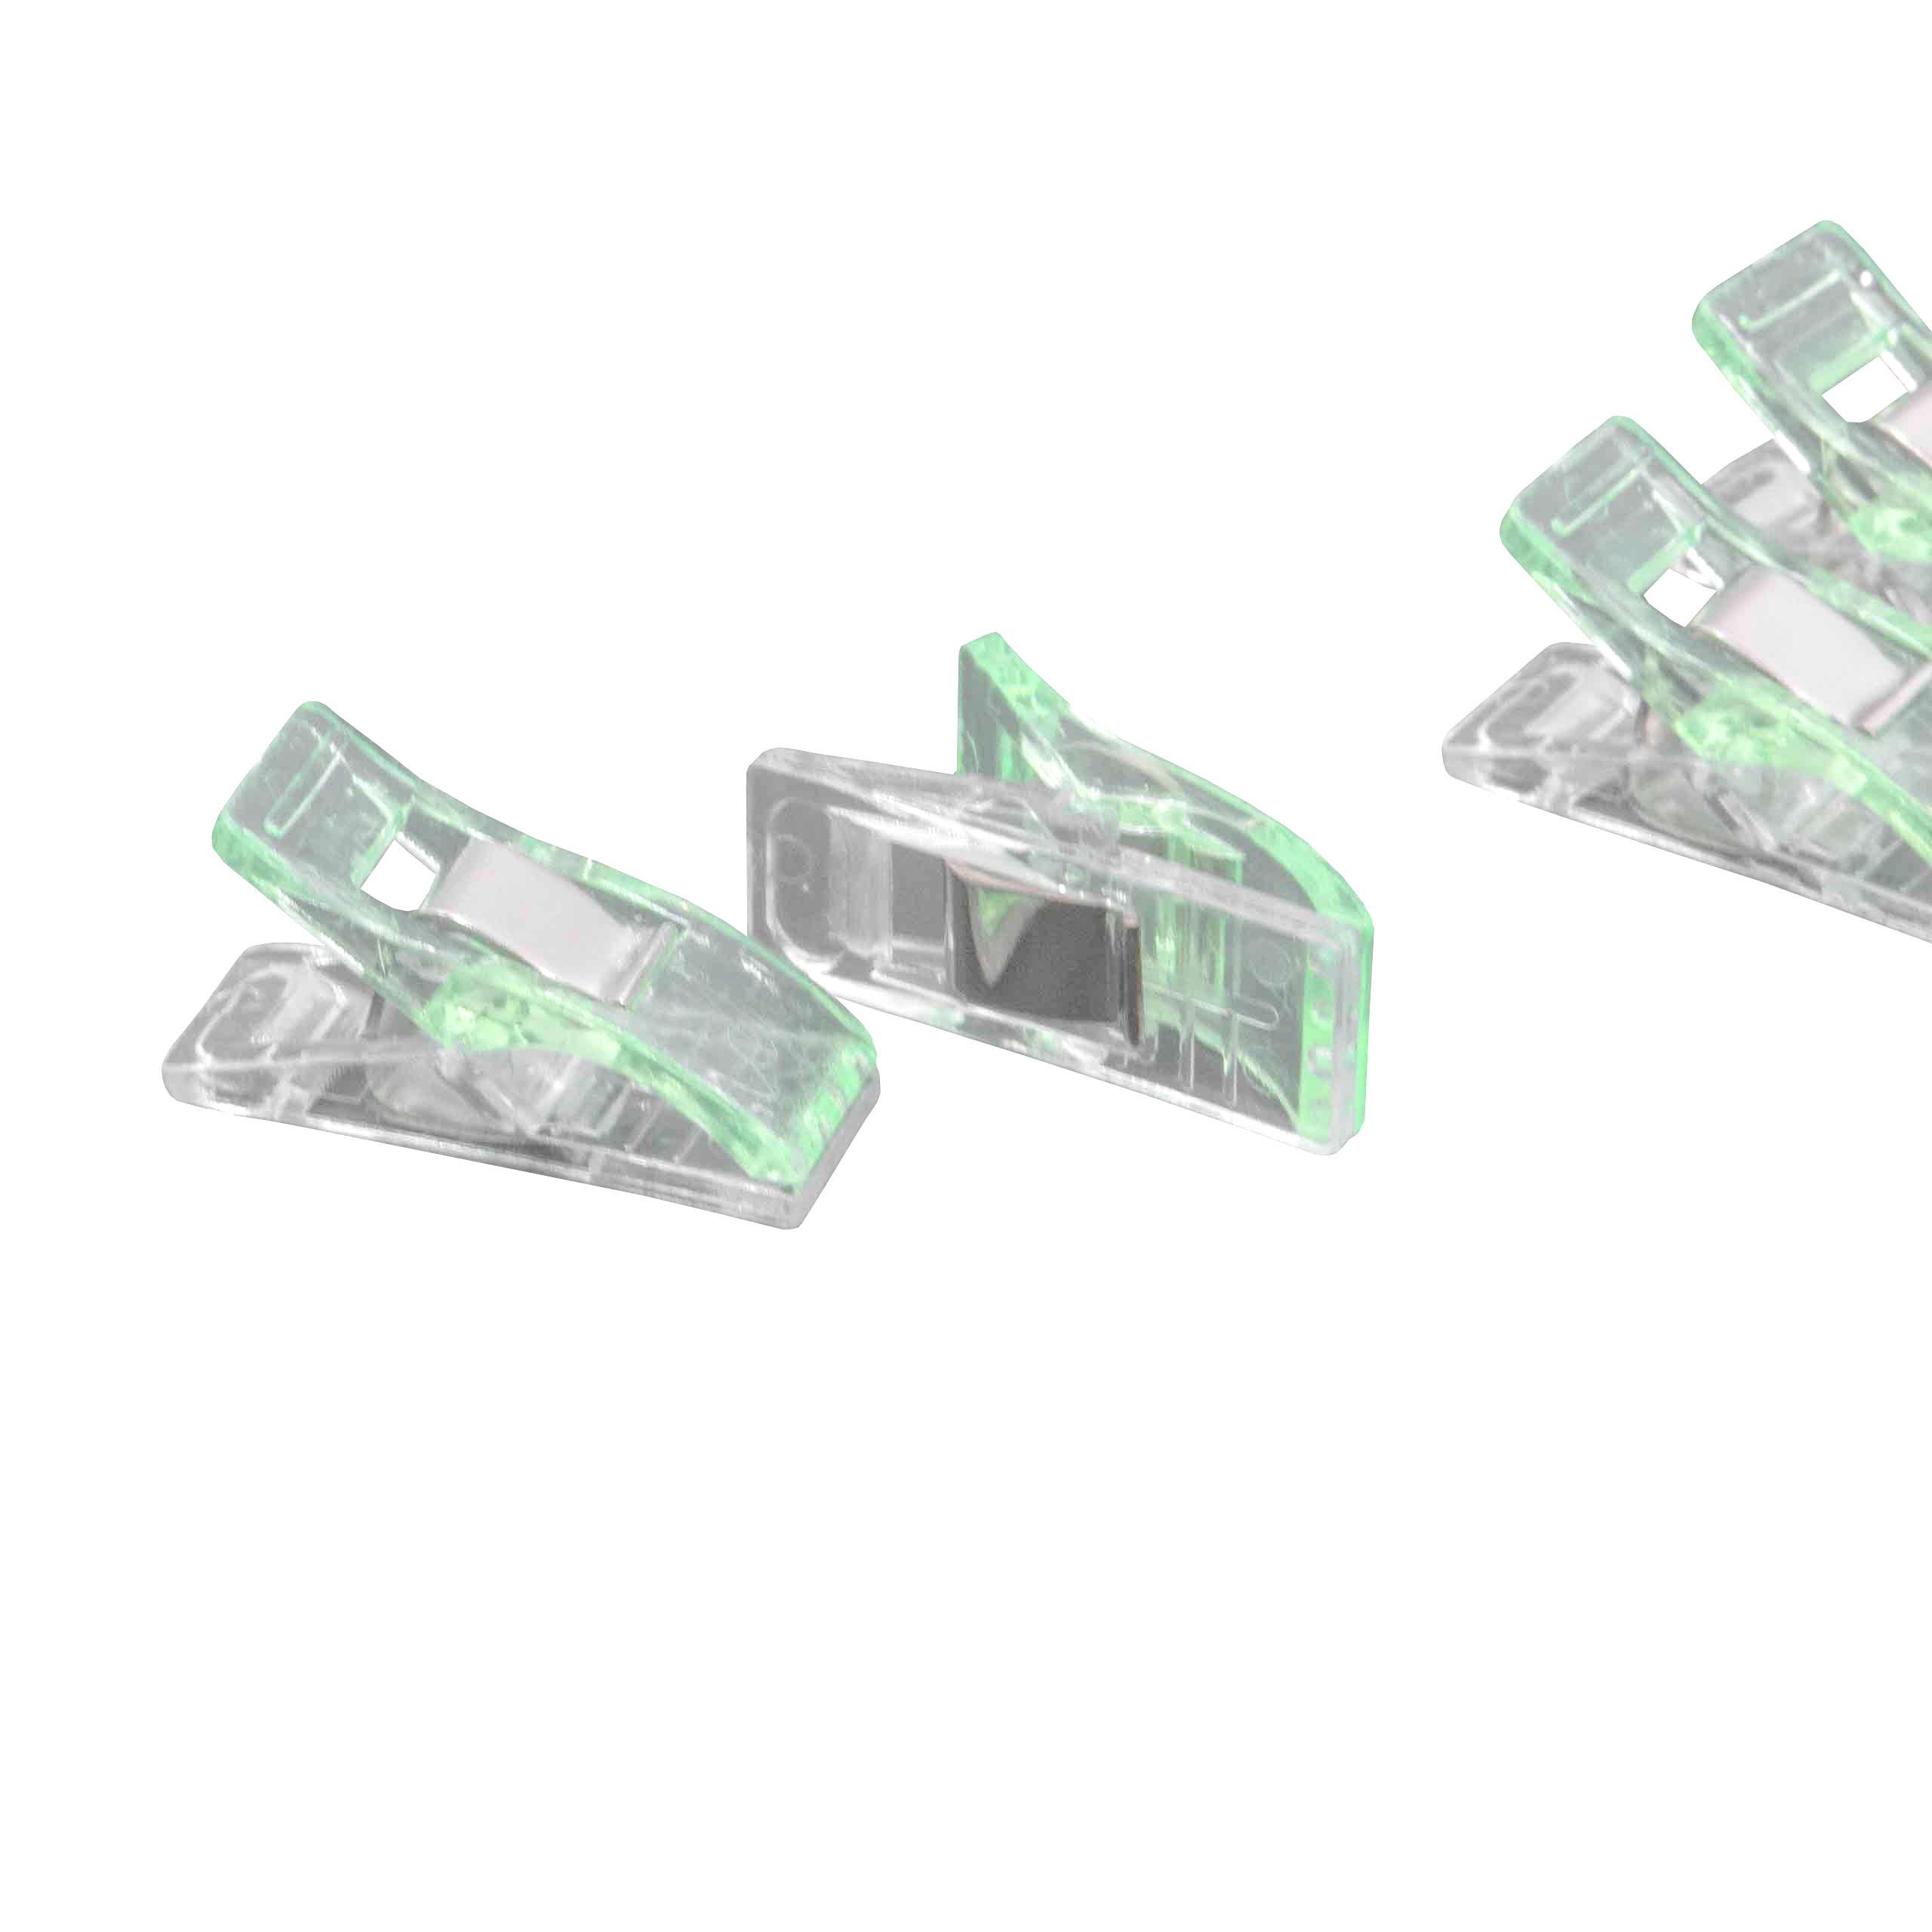 10x Wonderclips für Nähen und Basteln - Mit Abstandsmarkierungen, Grün